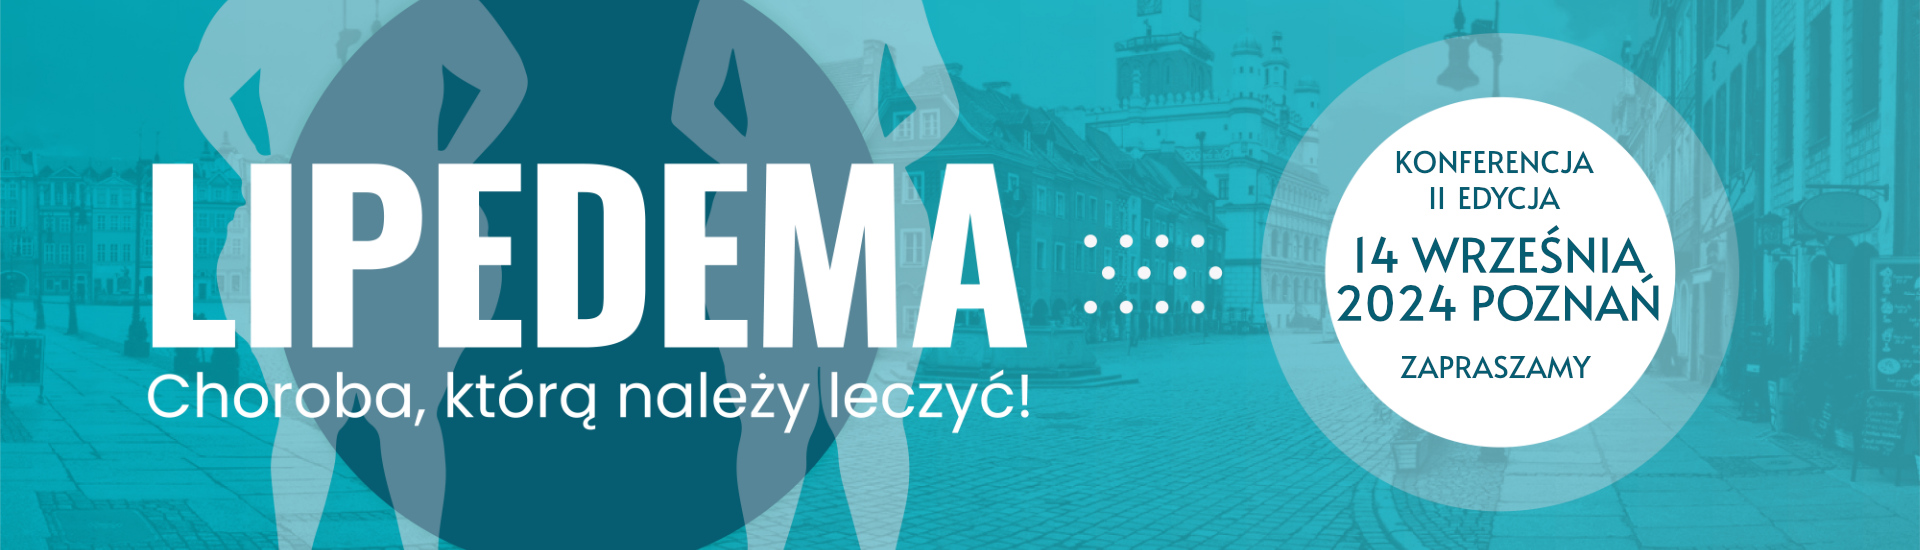 Konferencja LIPEDEMA Poznań 14 wrzesień 2024